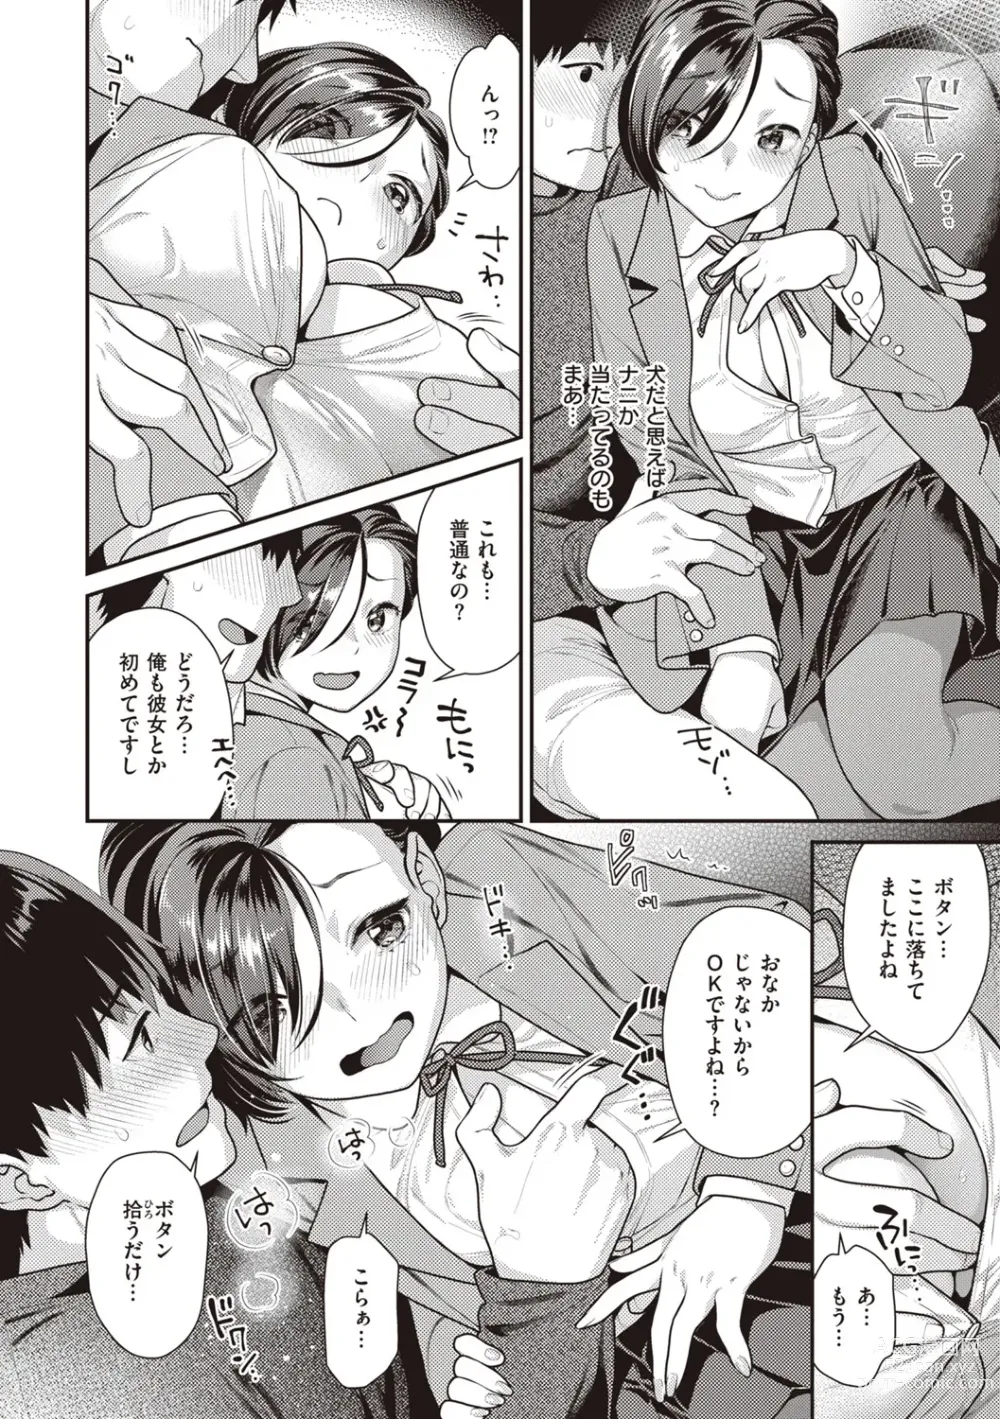 Page 146 of manga Totsumachi Nyanko